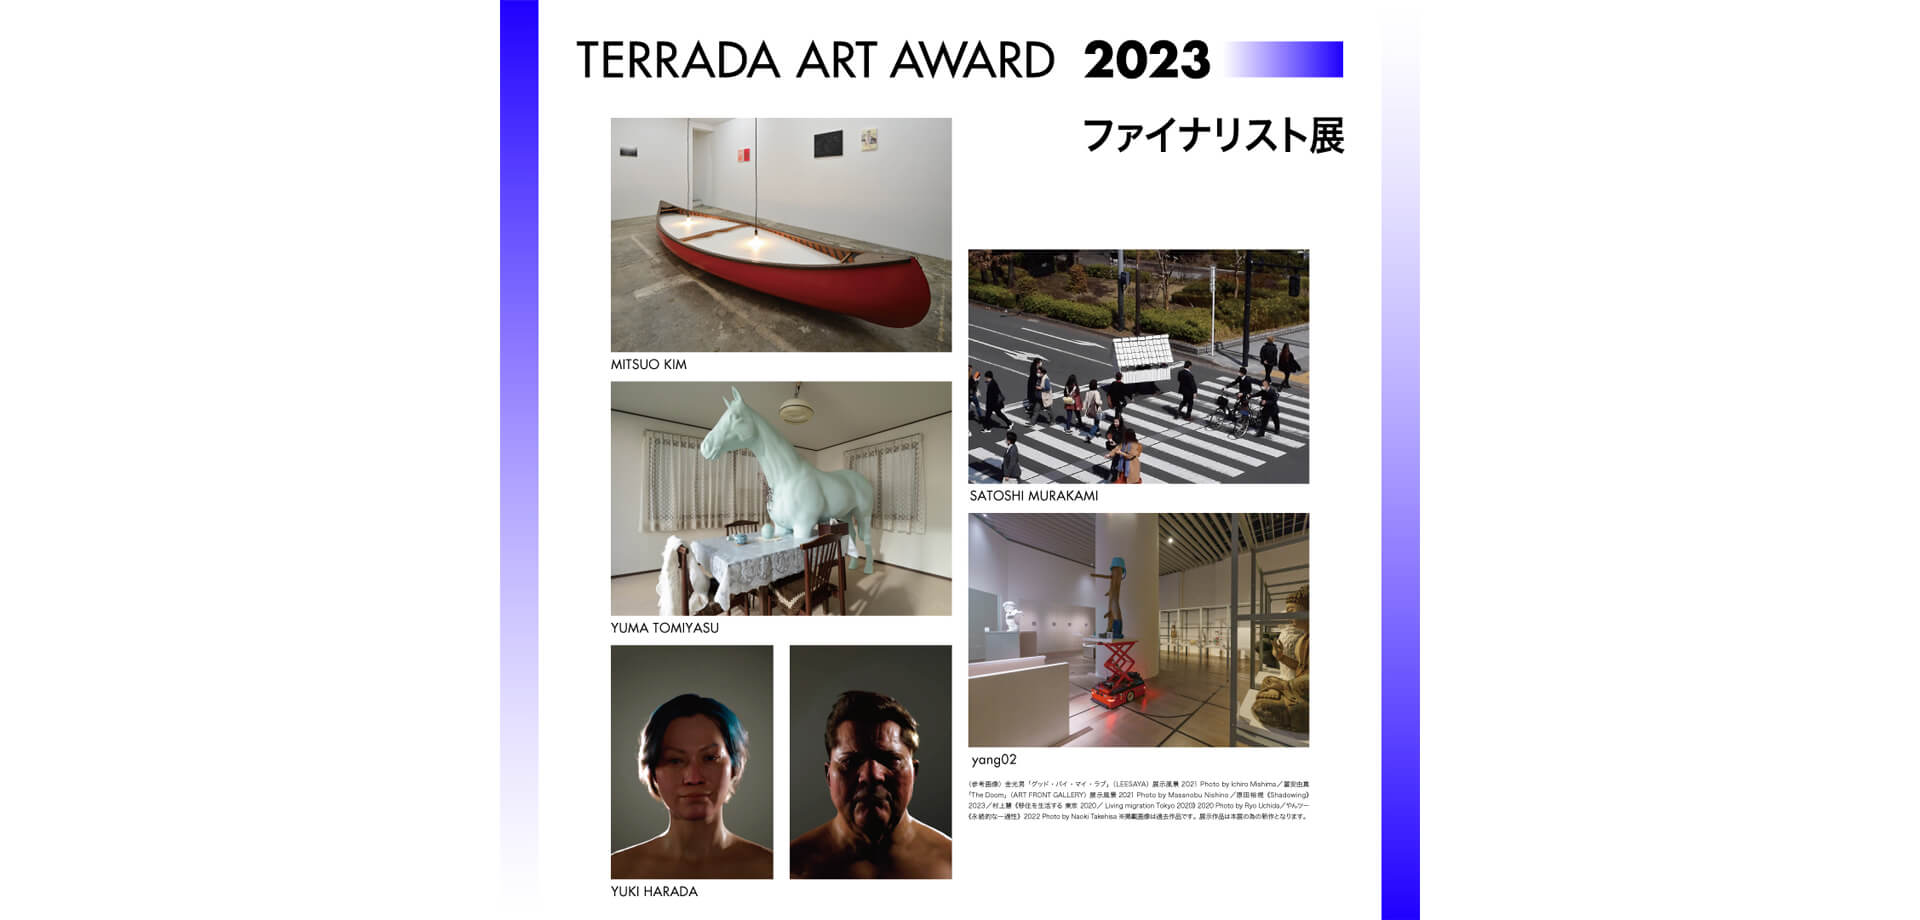 TERRADA ART AWARD 2023告知バナー